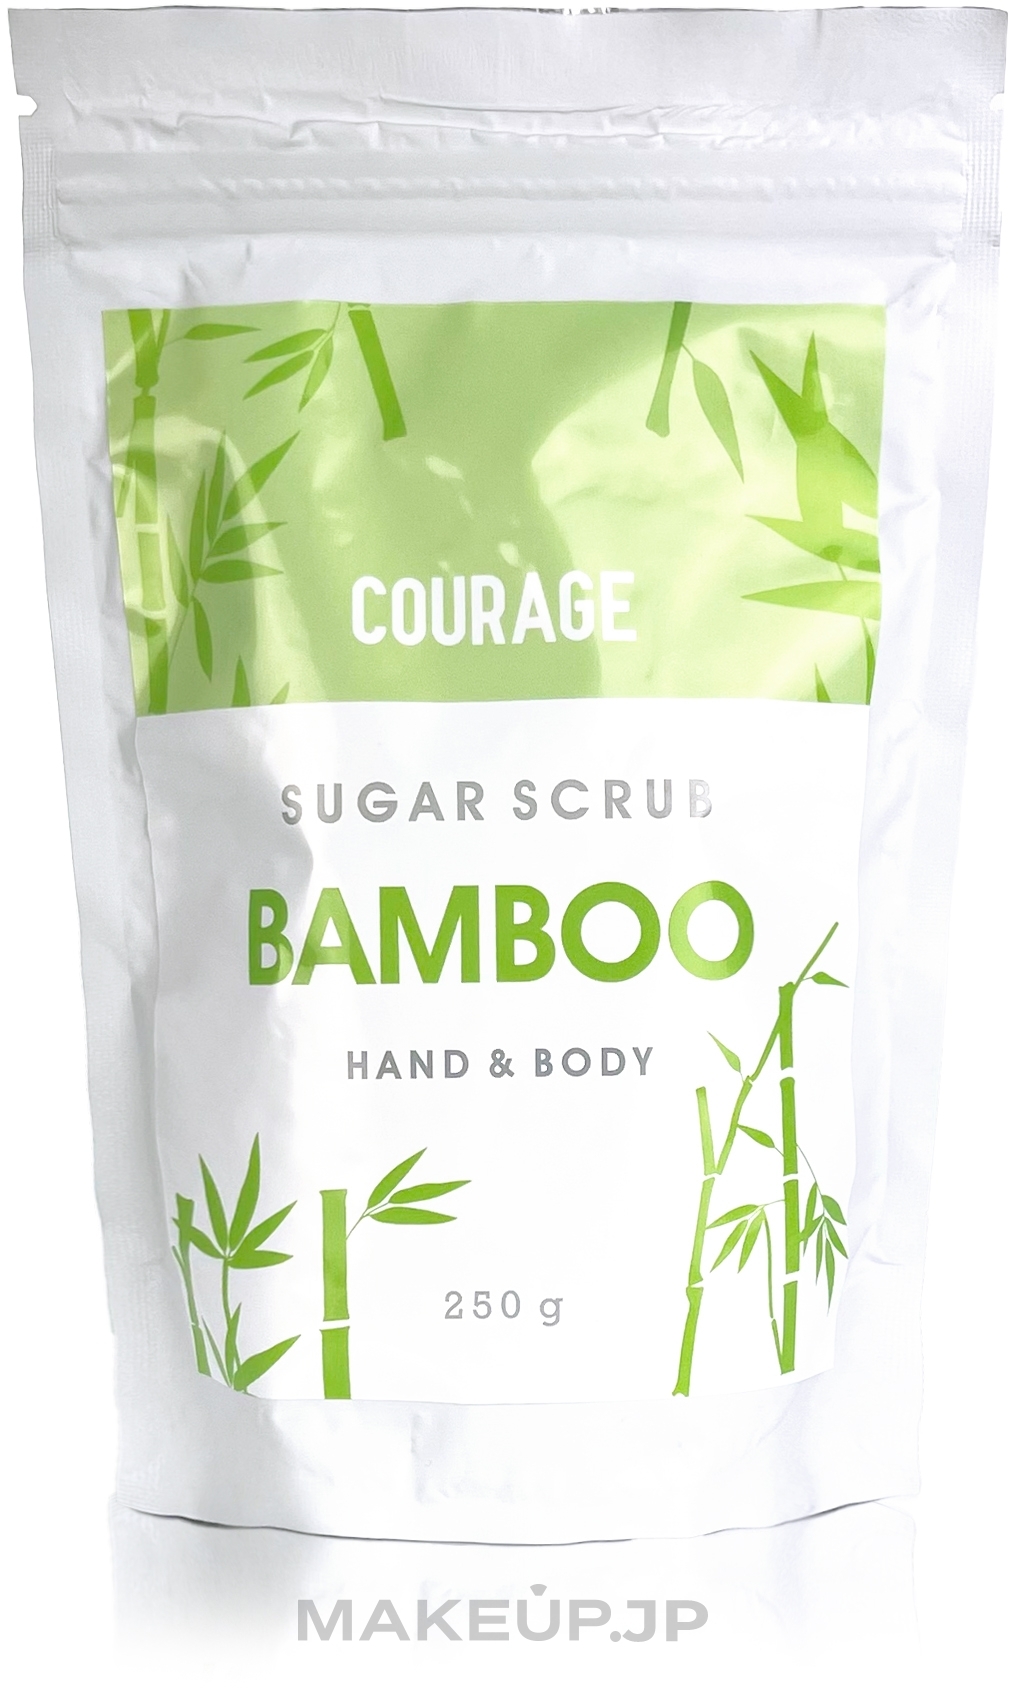 Green Bamboo Hand & Body Sugar Scrub - Courage Bamboo Hands & Body Sugar Scrub (doypack) — photo 250 g